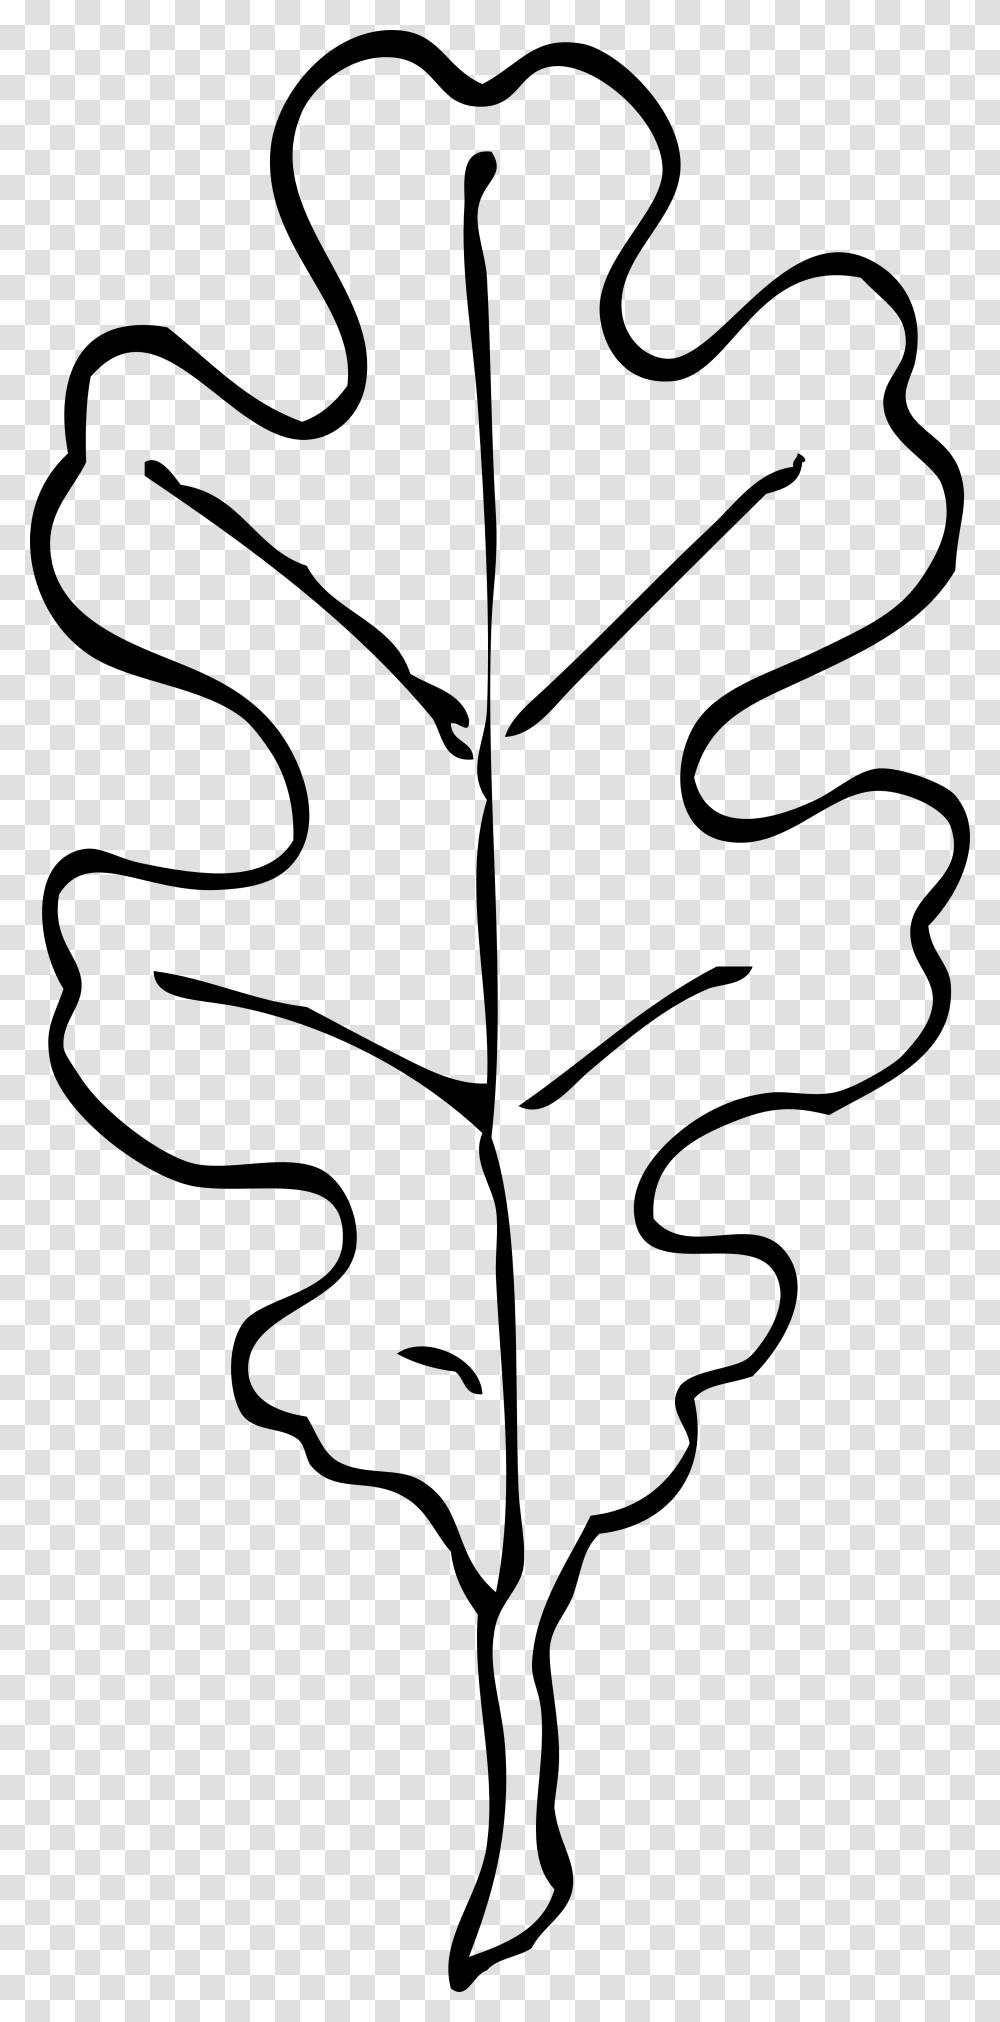 Drawn Leaves Leaf Border, Plant, Maple Leaf, Dynamite, Bomb Transparent Png